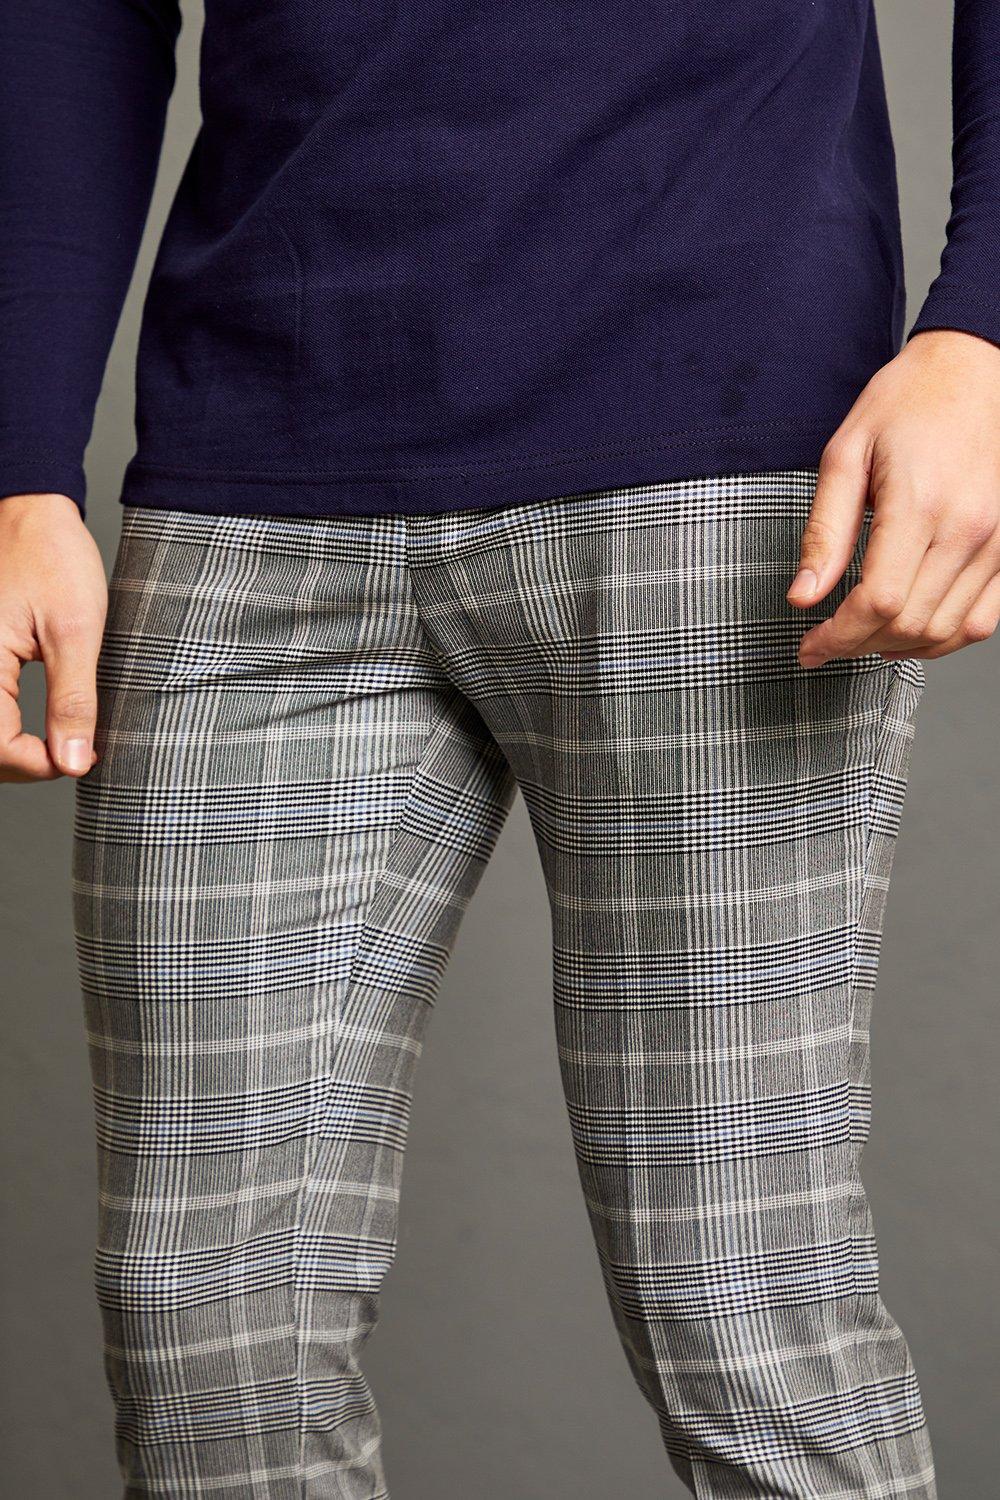 Pantalon homme habillé custom carreaux Prince-de-Galles